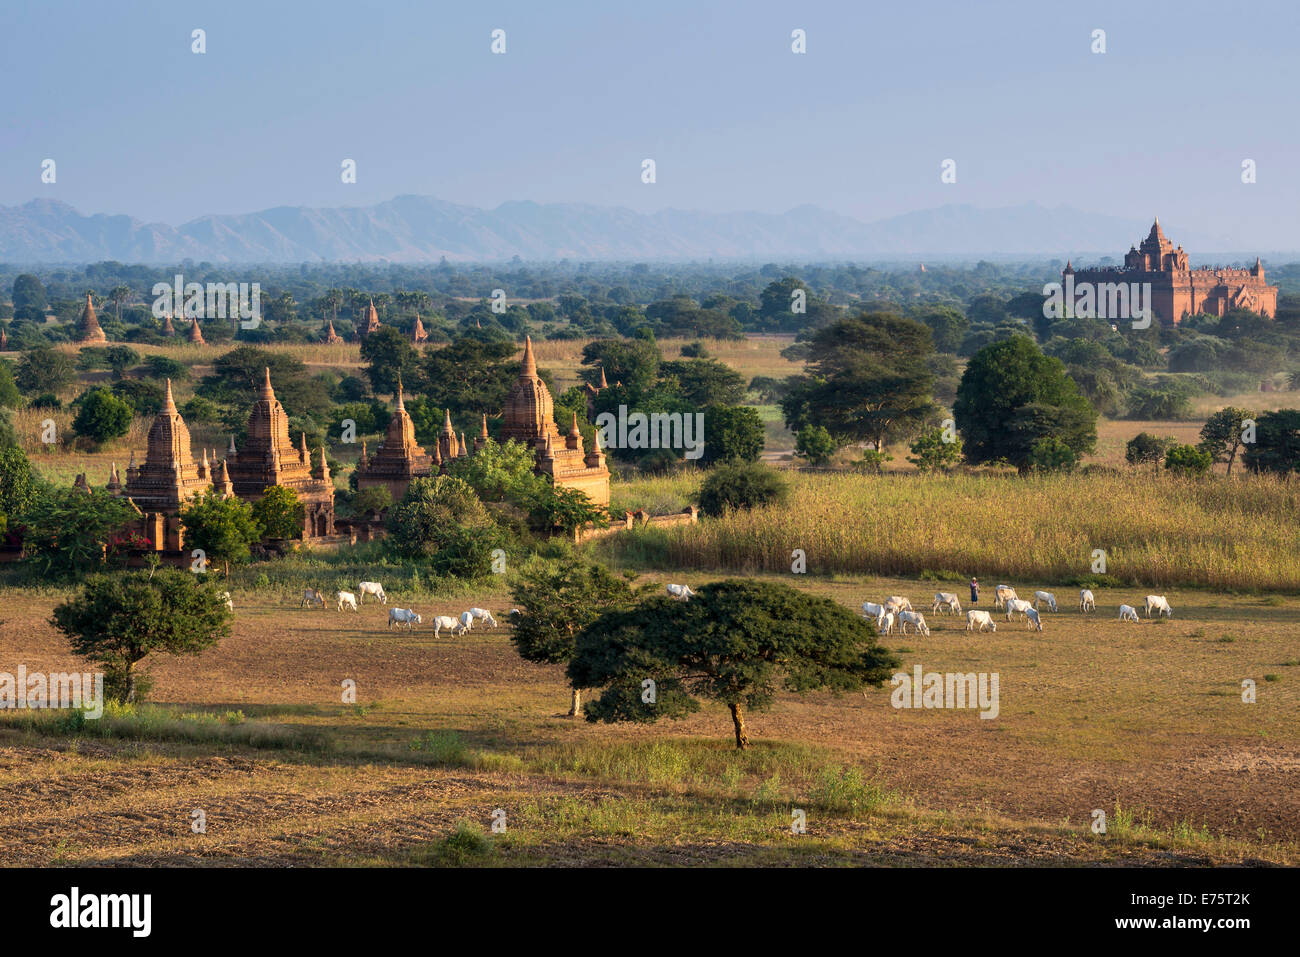 Plateau of Bagan, Pyathadar or Pyathatgyi Temple, Mandalay Division, Burma Stock Photo